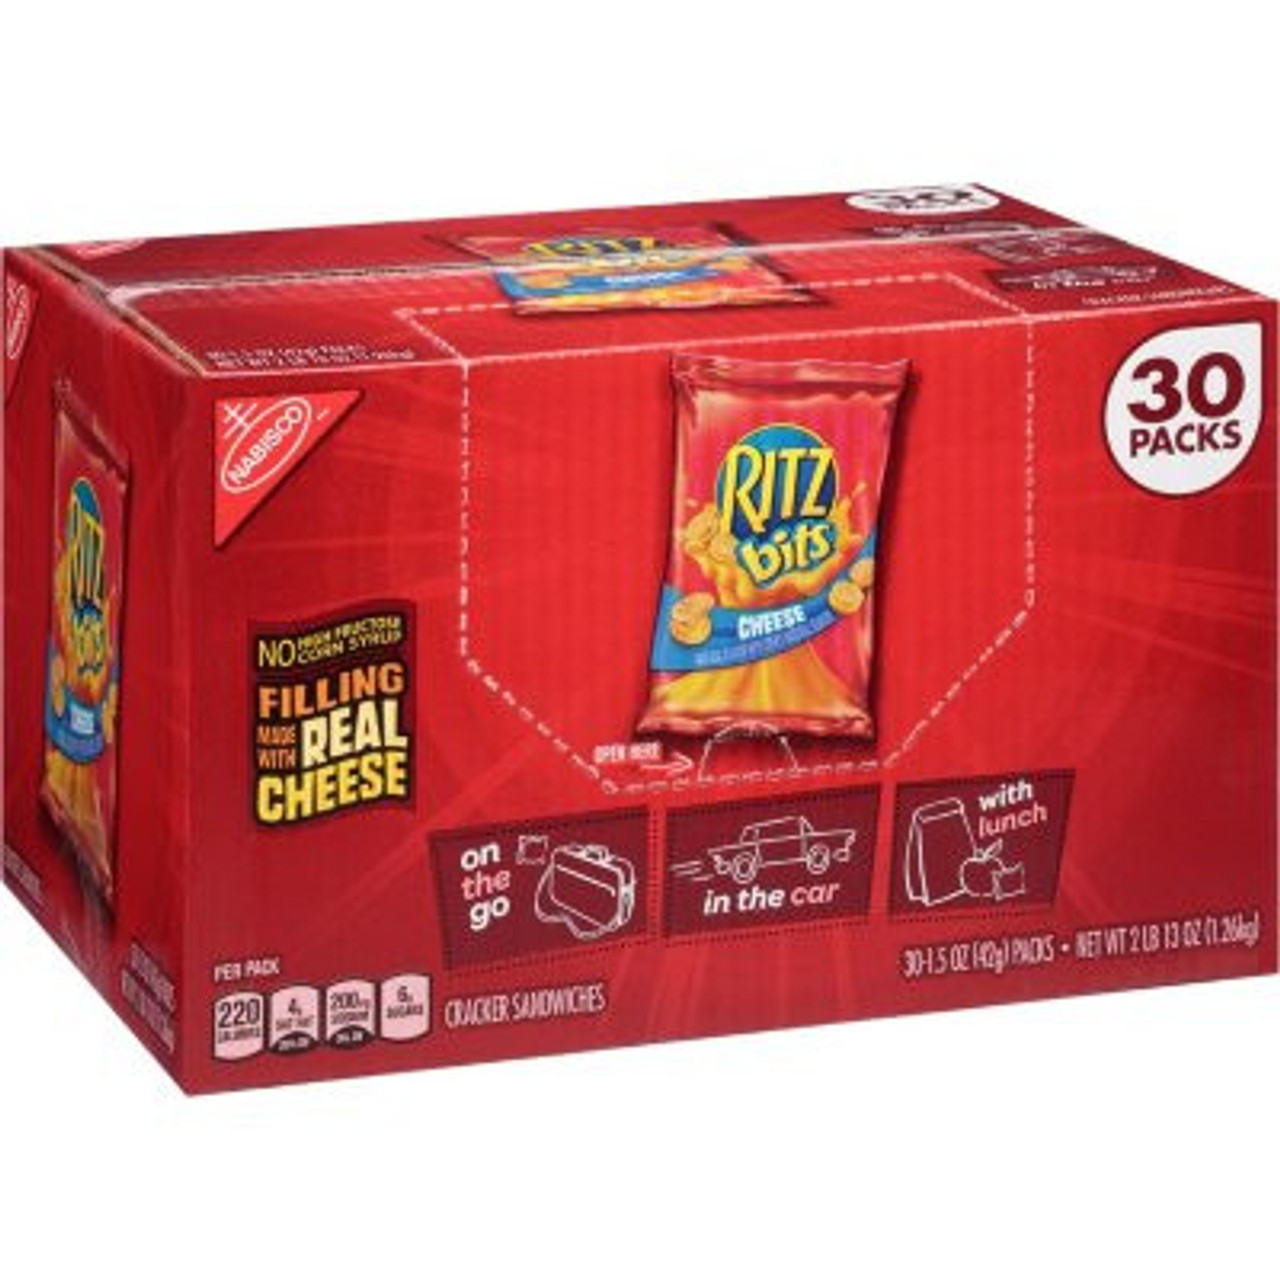 RITZ Bits Cheese Sandwich Crackers (1.5 oz., 30 pk.) - *Pre-Order